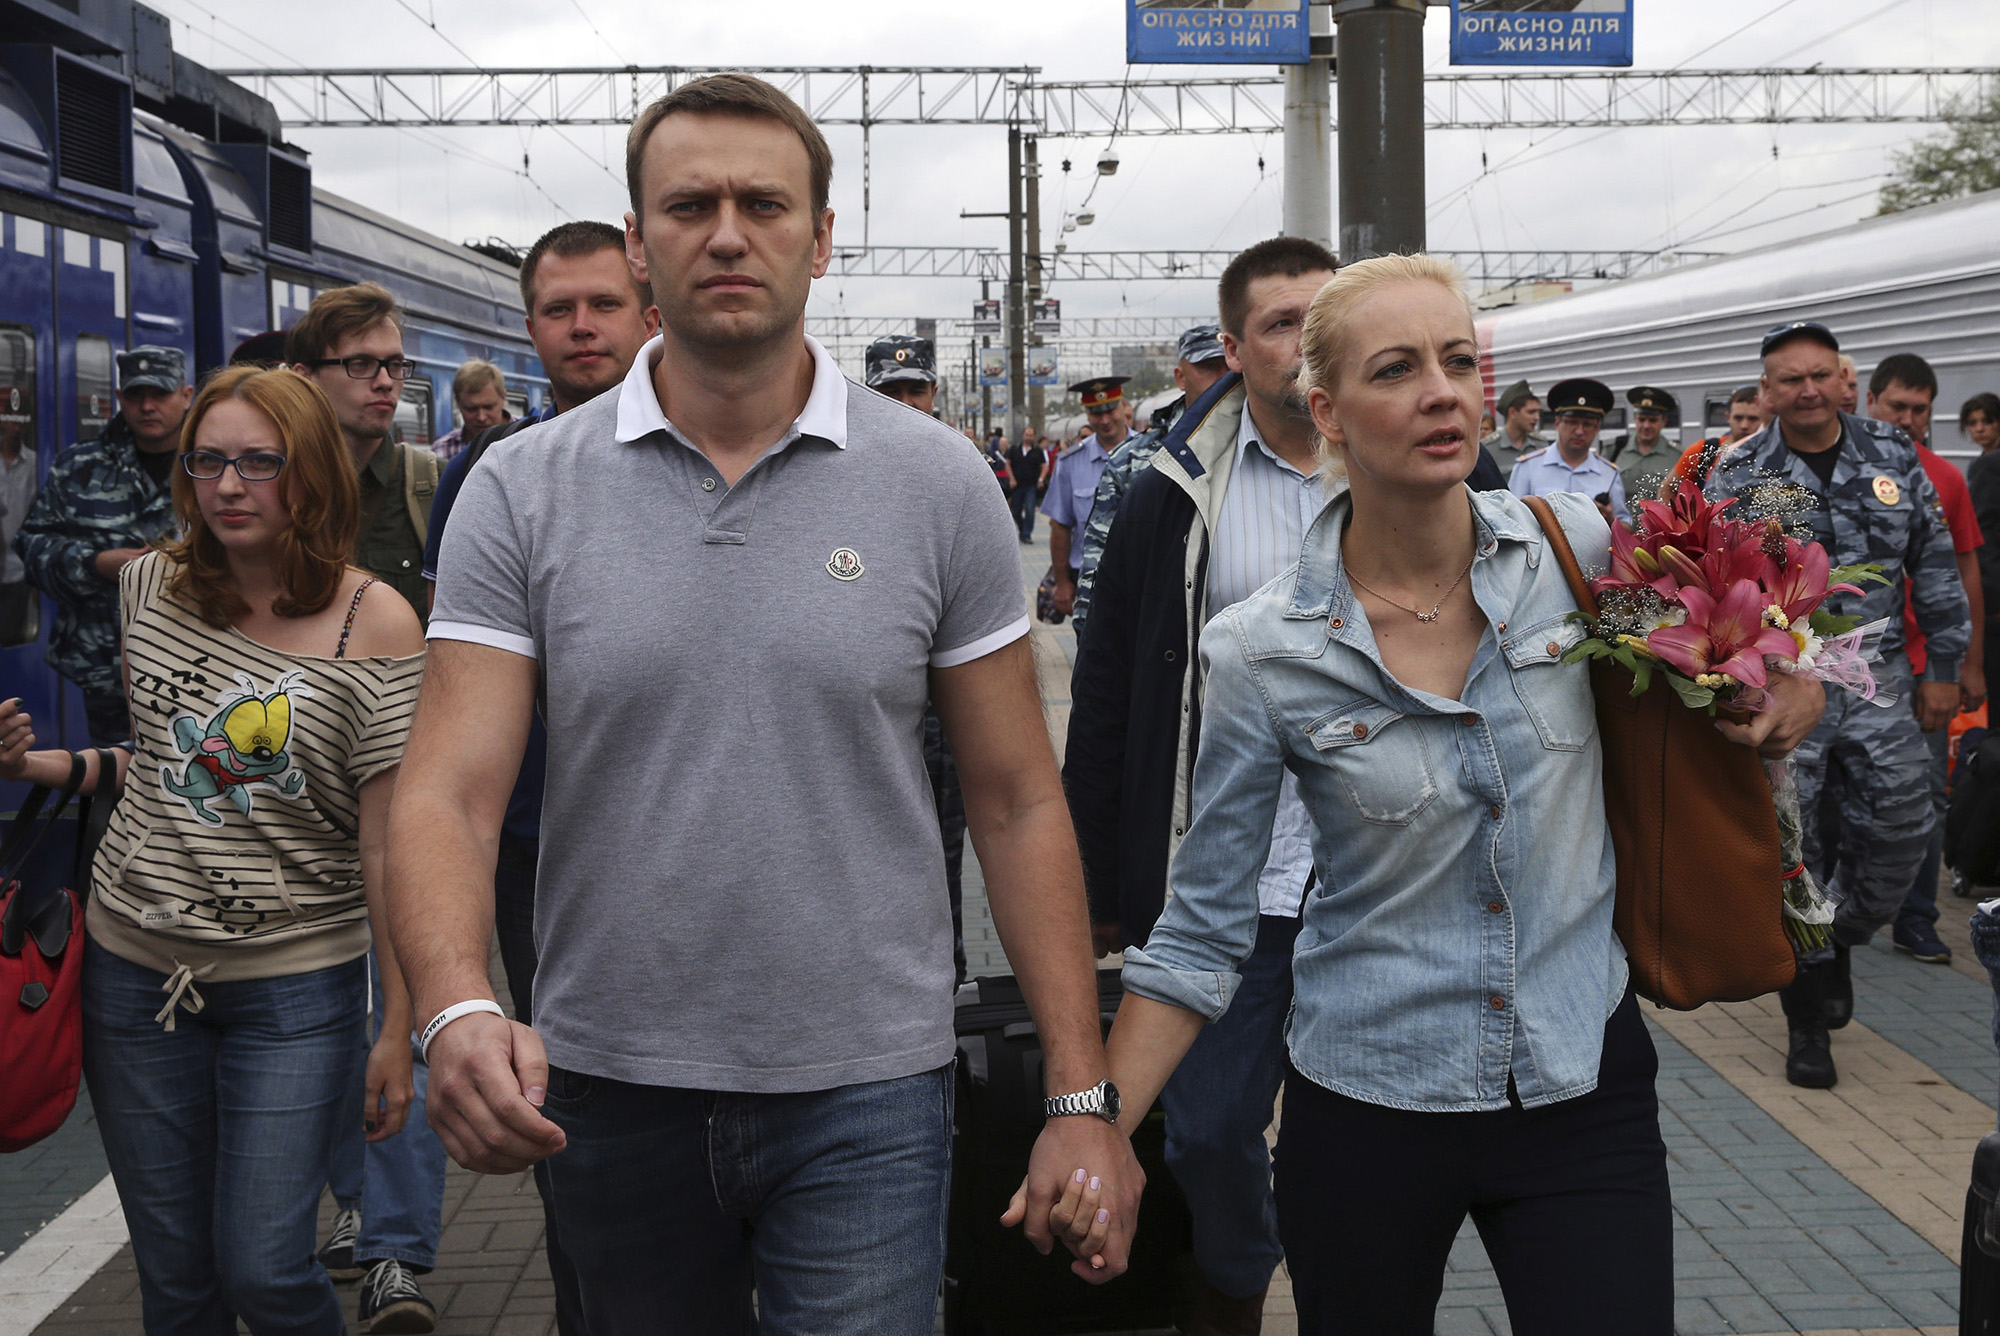 El líder de la oposición rusa Alexey Navalny, centro izquierda, camina con su esposa Yulia después de llegar de Kirov a una estación de tren en Moscú, Rusia, el 20 de julio de 2013.